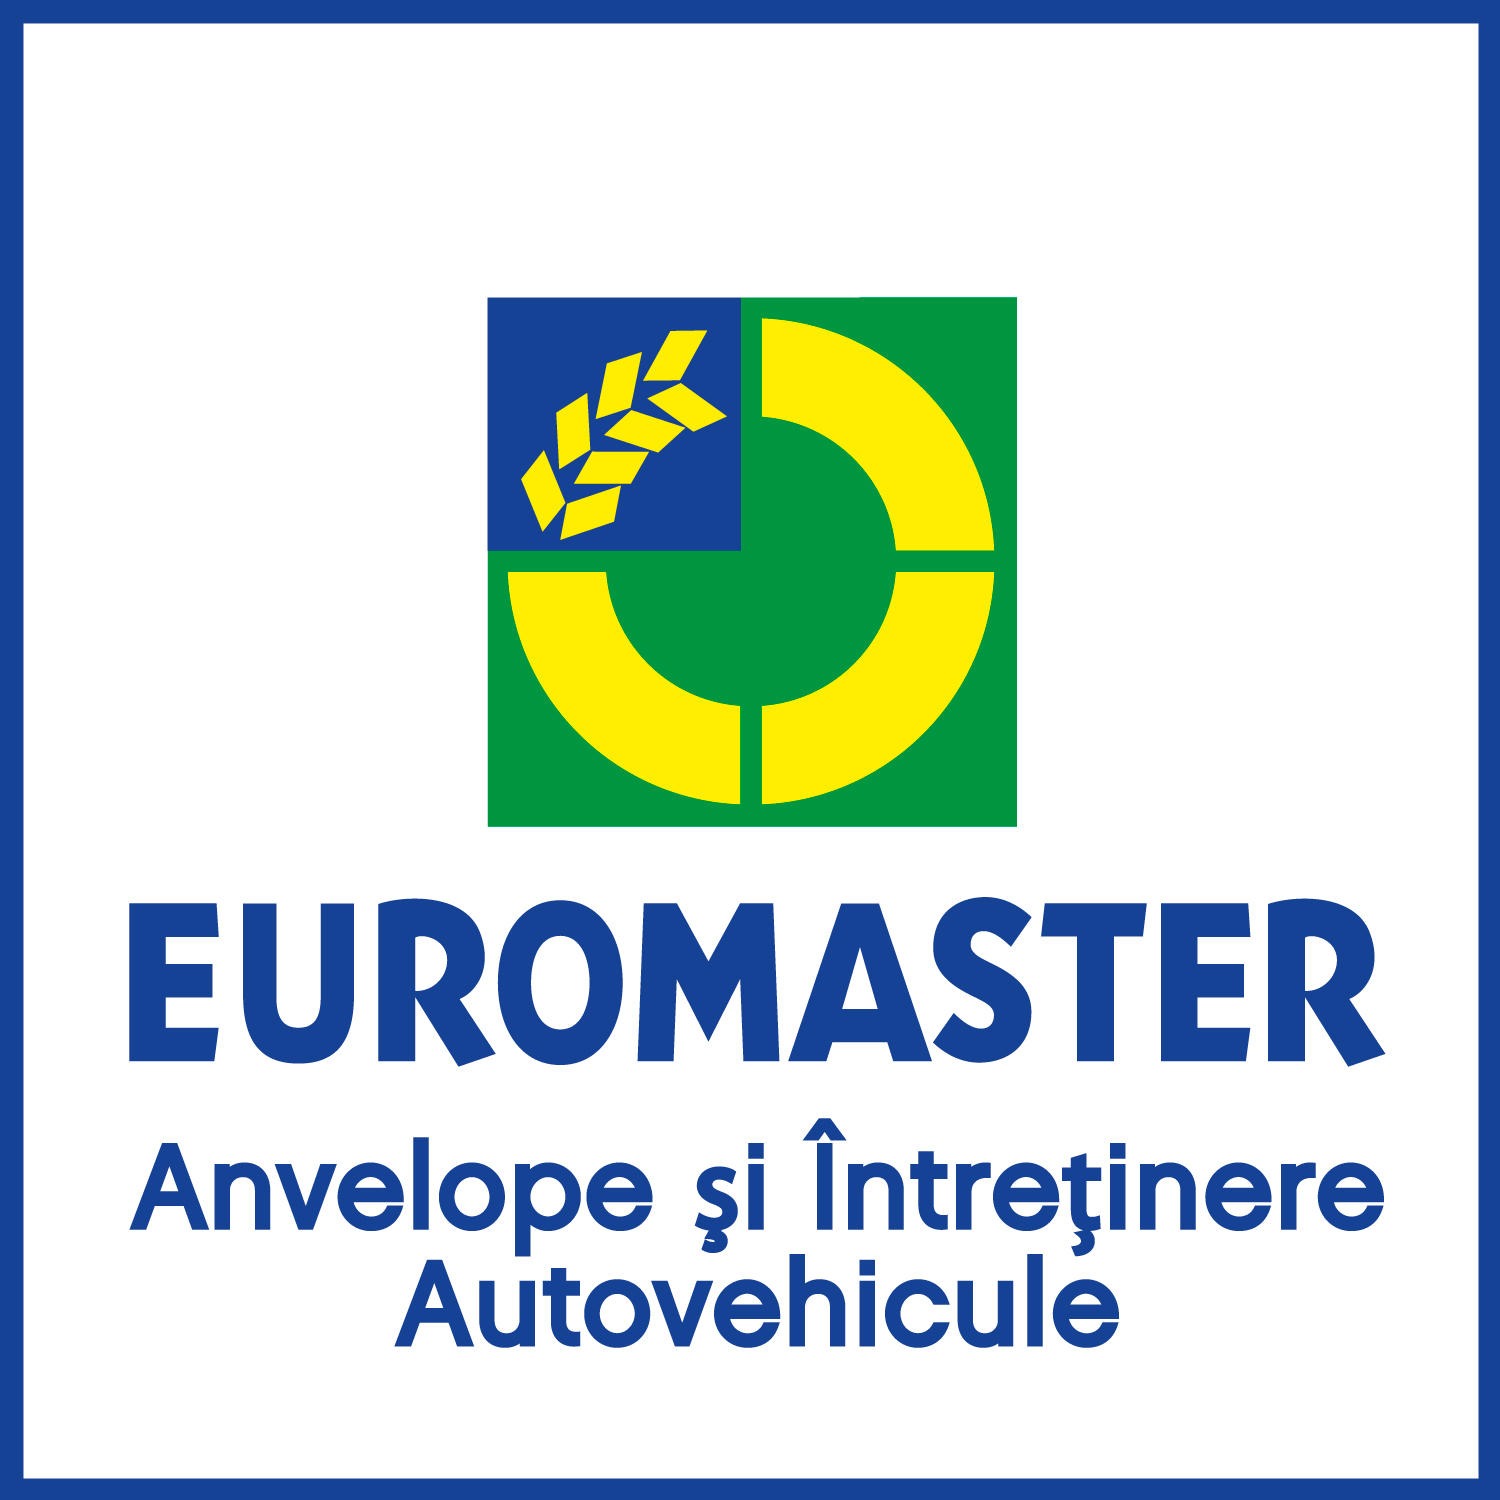 Euromaster Tenet 2 Logo